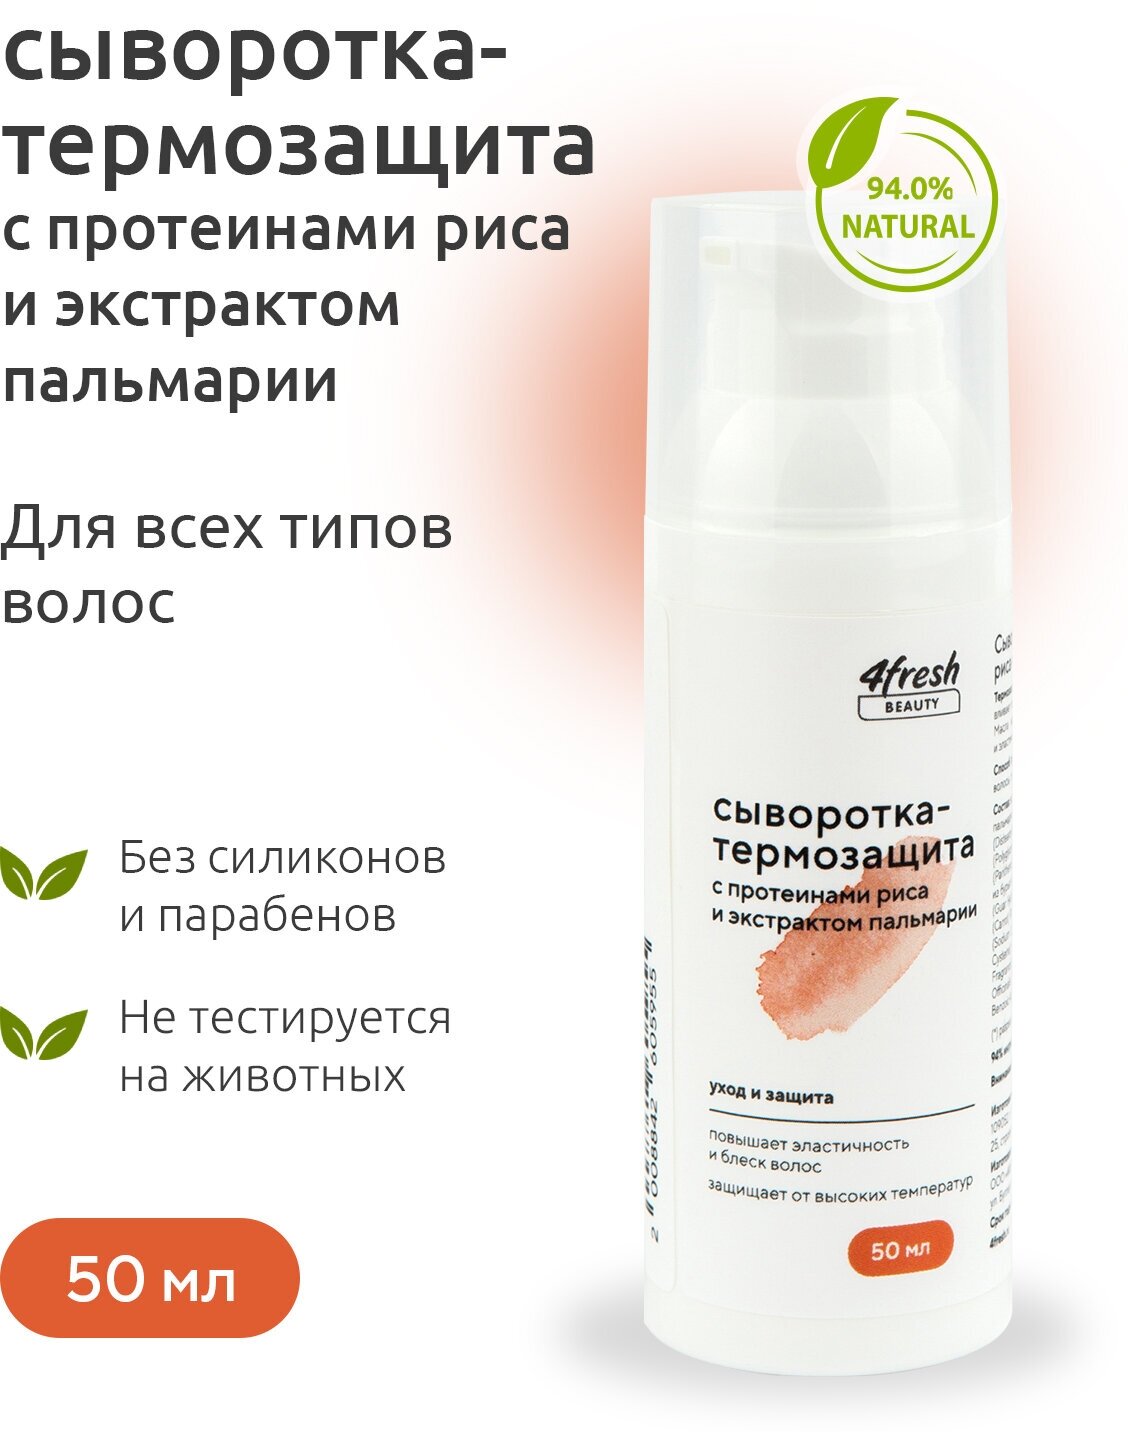 Сыворотка-термозащита для волос 4fresh BEAUTY с протеинами риса и экстрактом пальмарии 50 мл